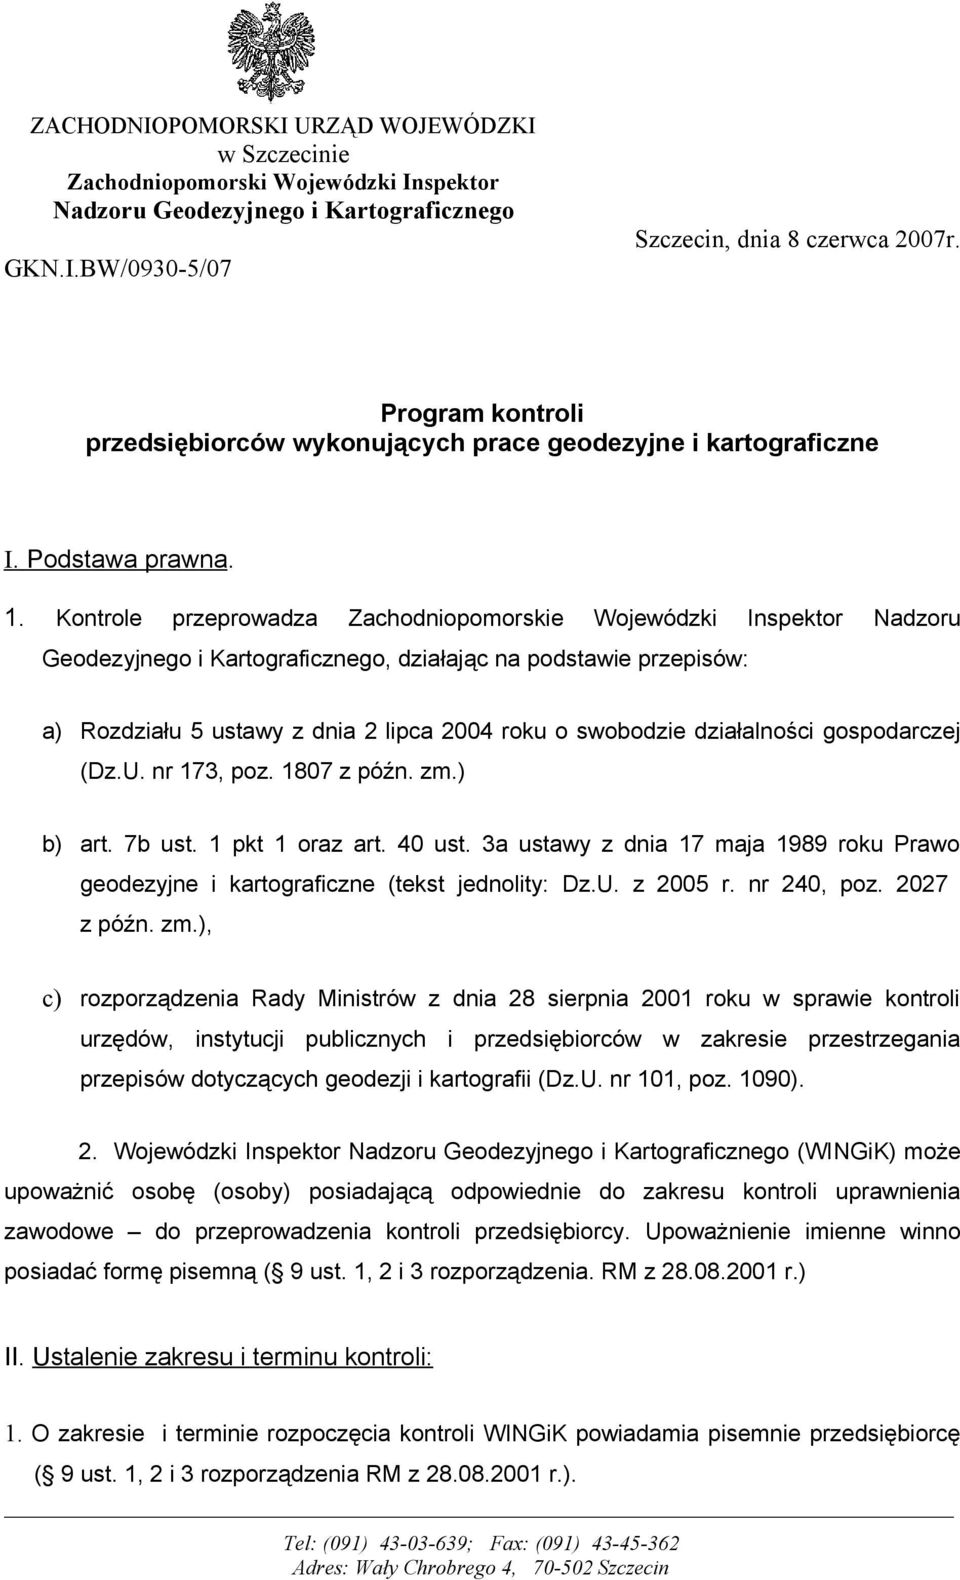 Kontrole przeprowadza Zachodniopomorskie Wojewódzki Inspektor Nadzoru Geodezyjnego i Kartograficznego, działając na podstawie przepisów: a) Rozdziału 5 ustawy z dnia 2 lipca 2004 roku o swobodzie